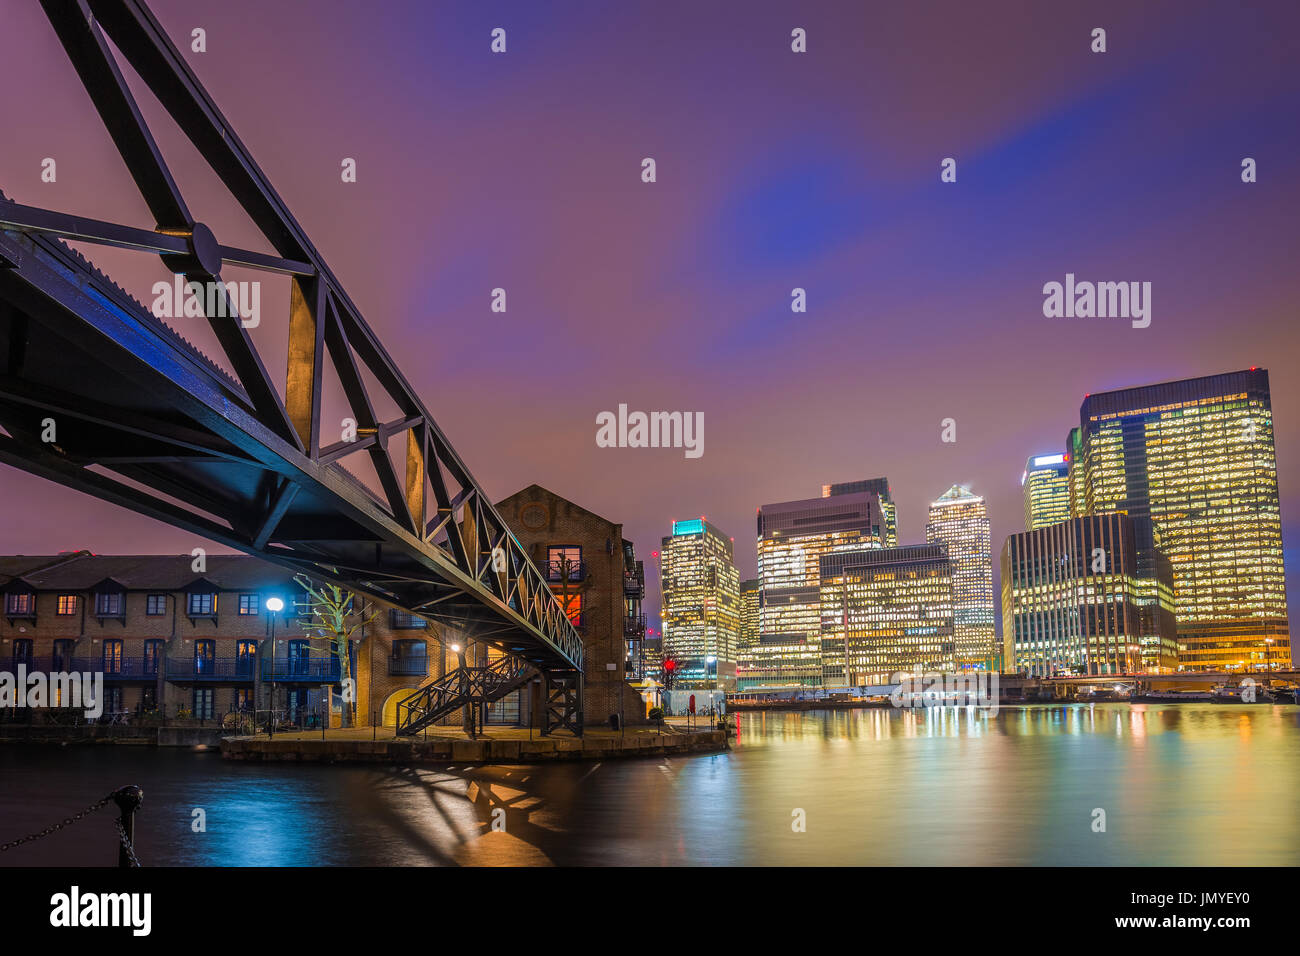 Londra, Inghilterra - colorata notte cielo a Canary Wharf financial district con skyscapers e gli edifici residenziali presso il Docklands di Londra di notte Foto Stock